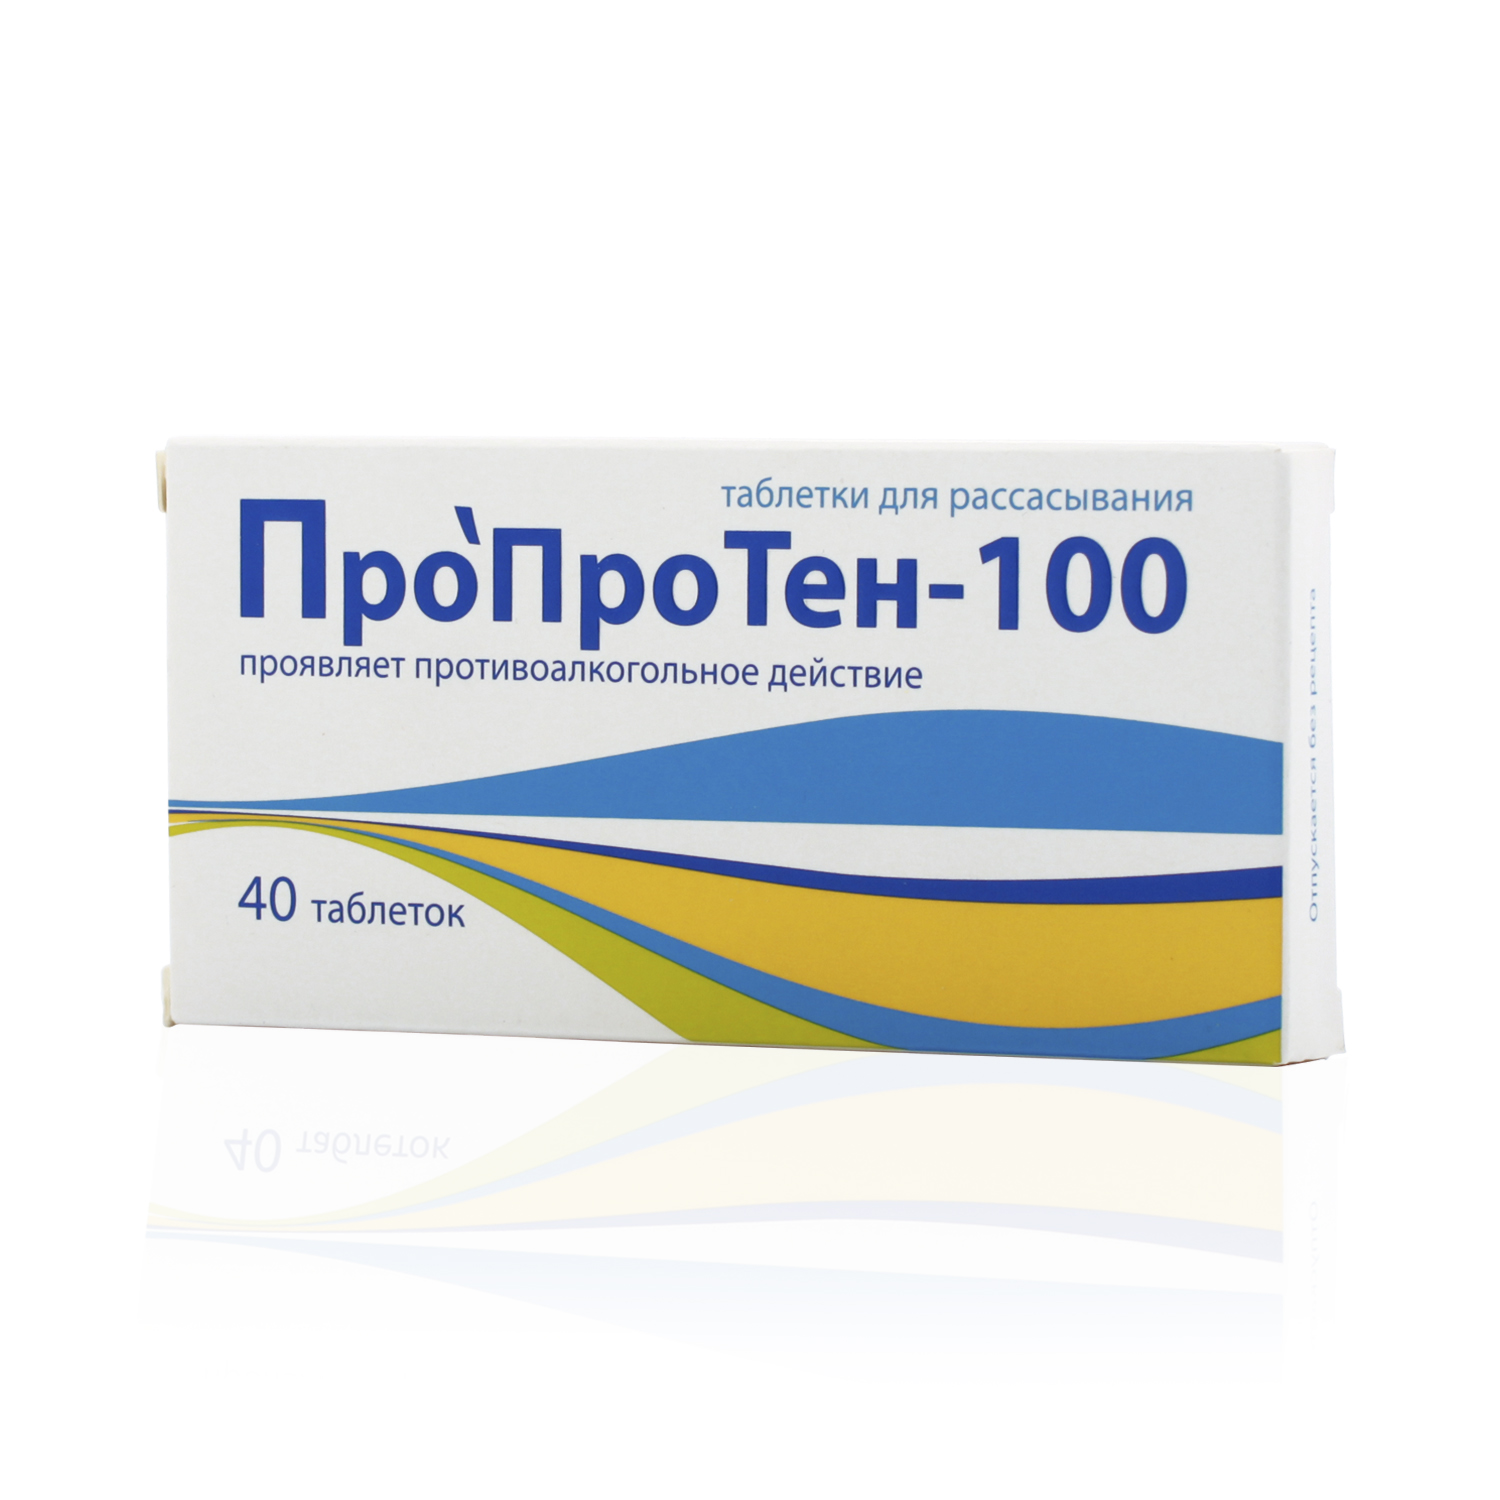 Купить Пропротен-100 таблетки для рассасывания 40 шт., Materia Medica [Материа Медика Холдинг НПФ]